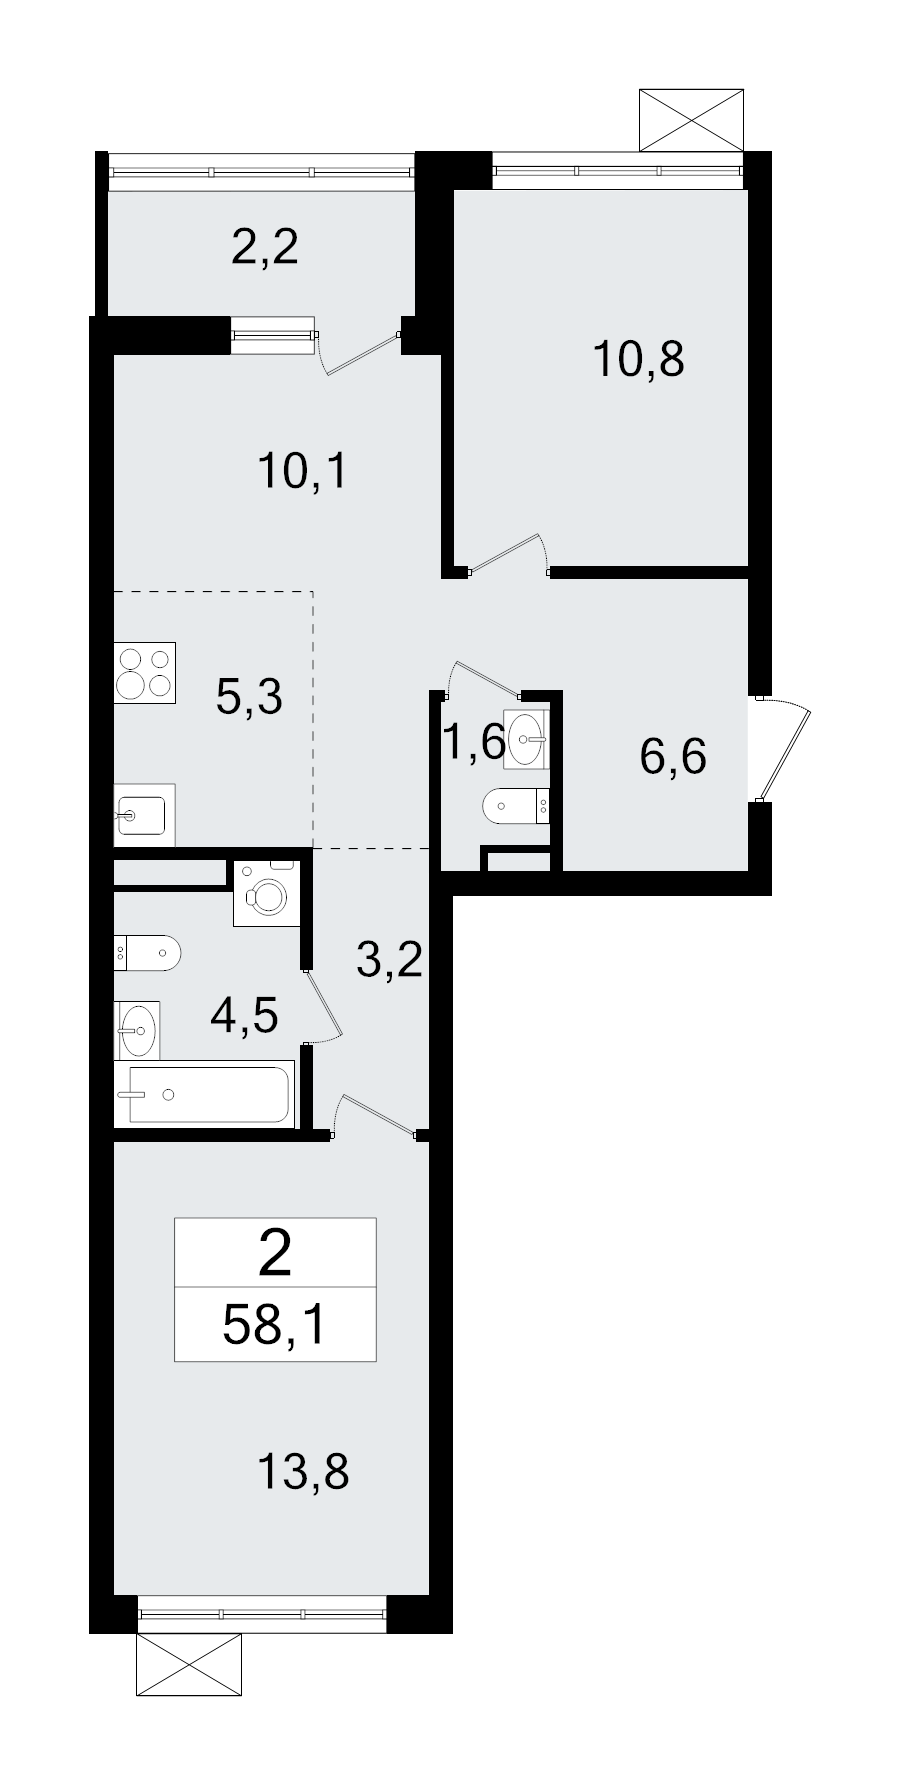 3-комнатная (Евро) квартира, 58.1 м² в ЖК "А101 Всеволожск" - планировка, фото №1